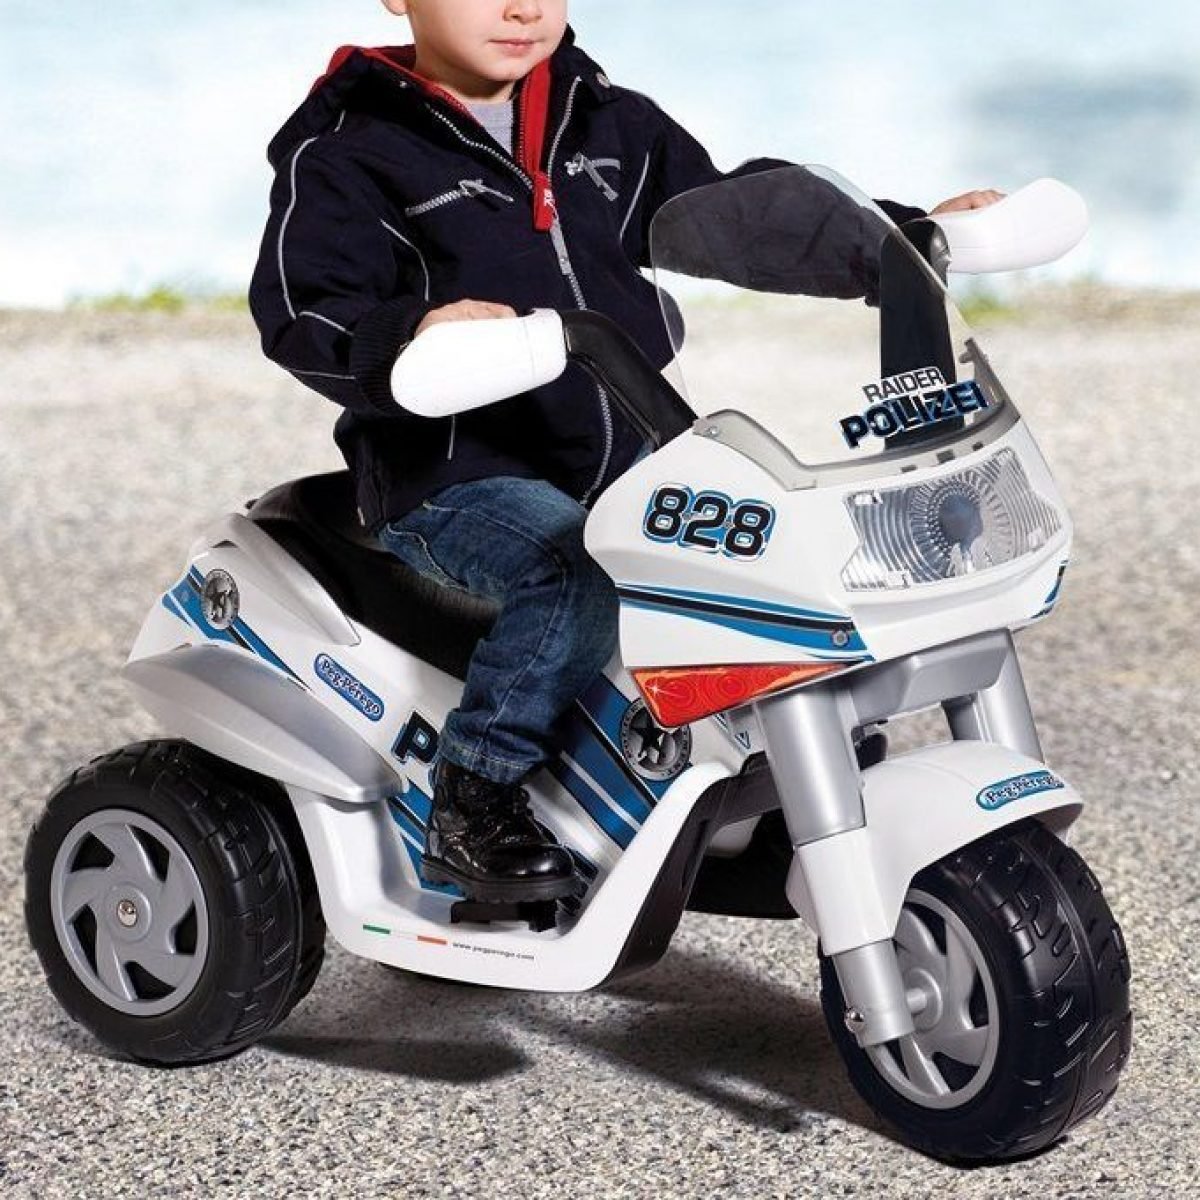 Малышей мотоциклы для детей малышей